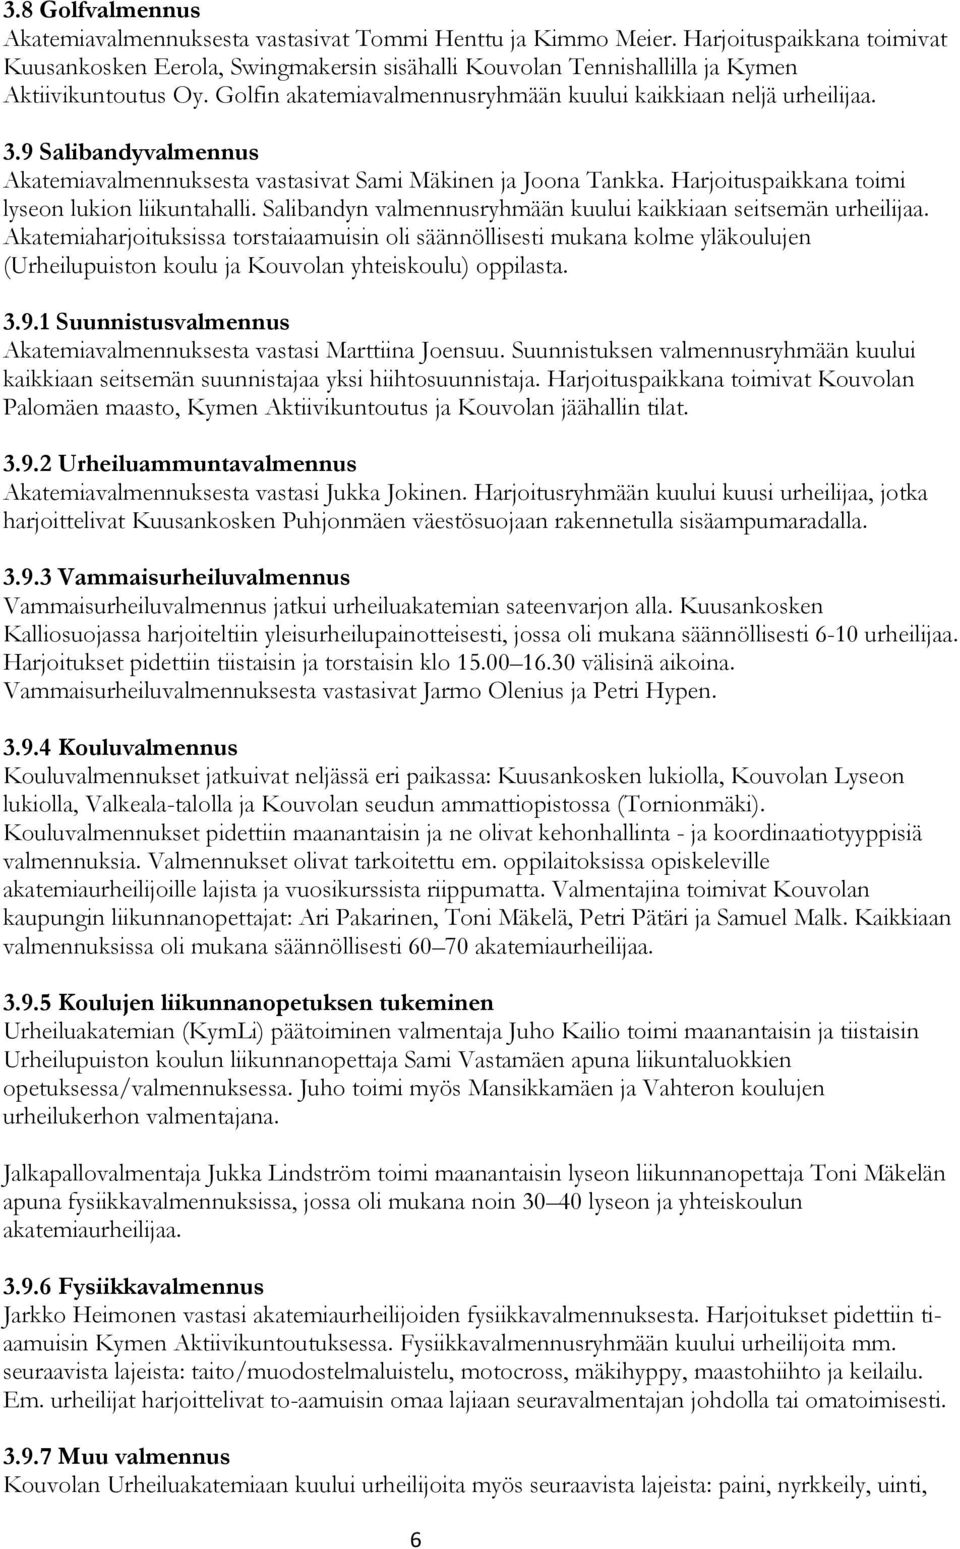 9 Salibandyvalmennus Akatemiavalmennuksesta vastasivat Sami Mäkinen ja Joona Tankka. Harjoituspaikkana toimi lyseon lukion liikuntahalli.